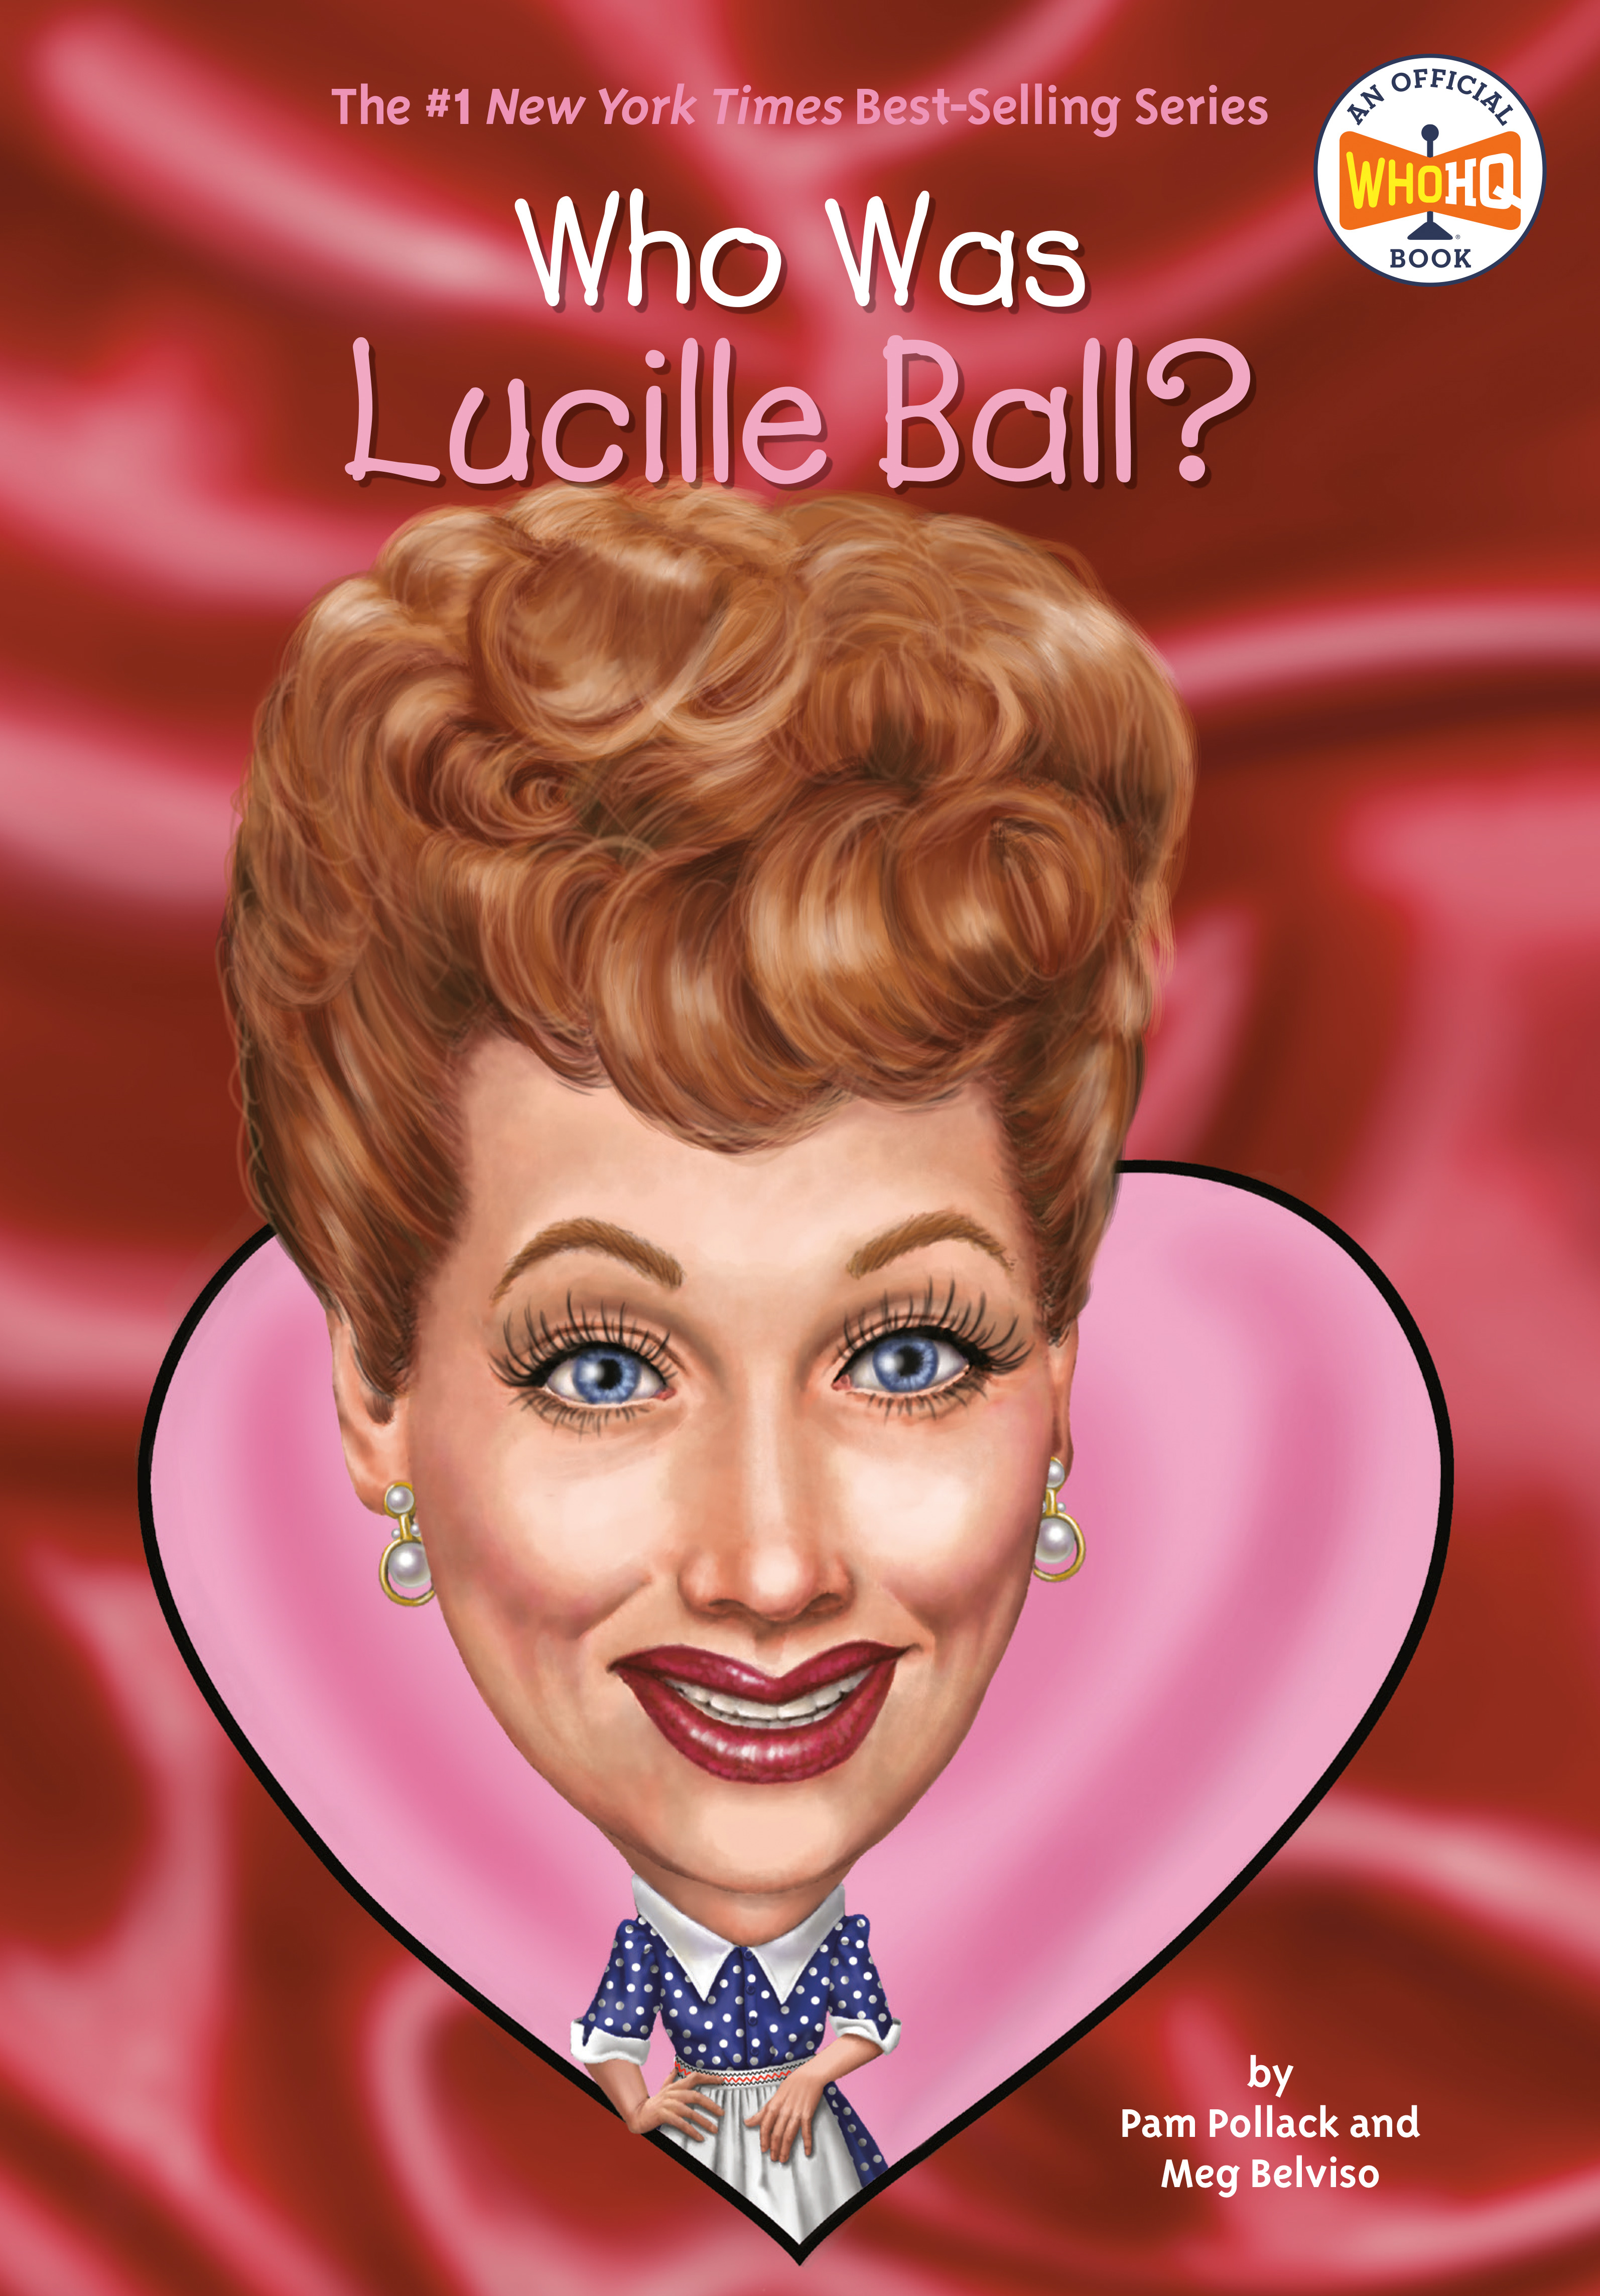 Who Was Lucille Ball? | Pollack, Pam (Auteur) | Belviso, Meg (Auteur) | Copeland, Gregory (Illustrateur)